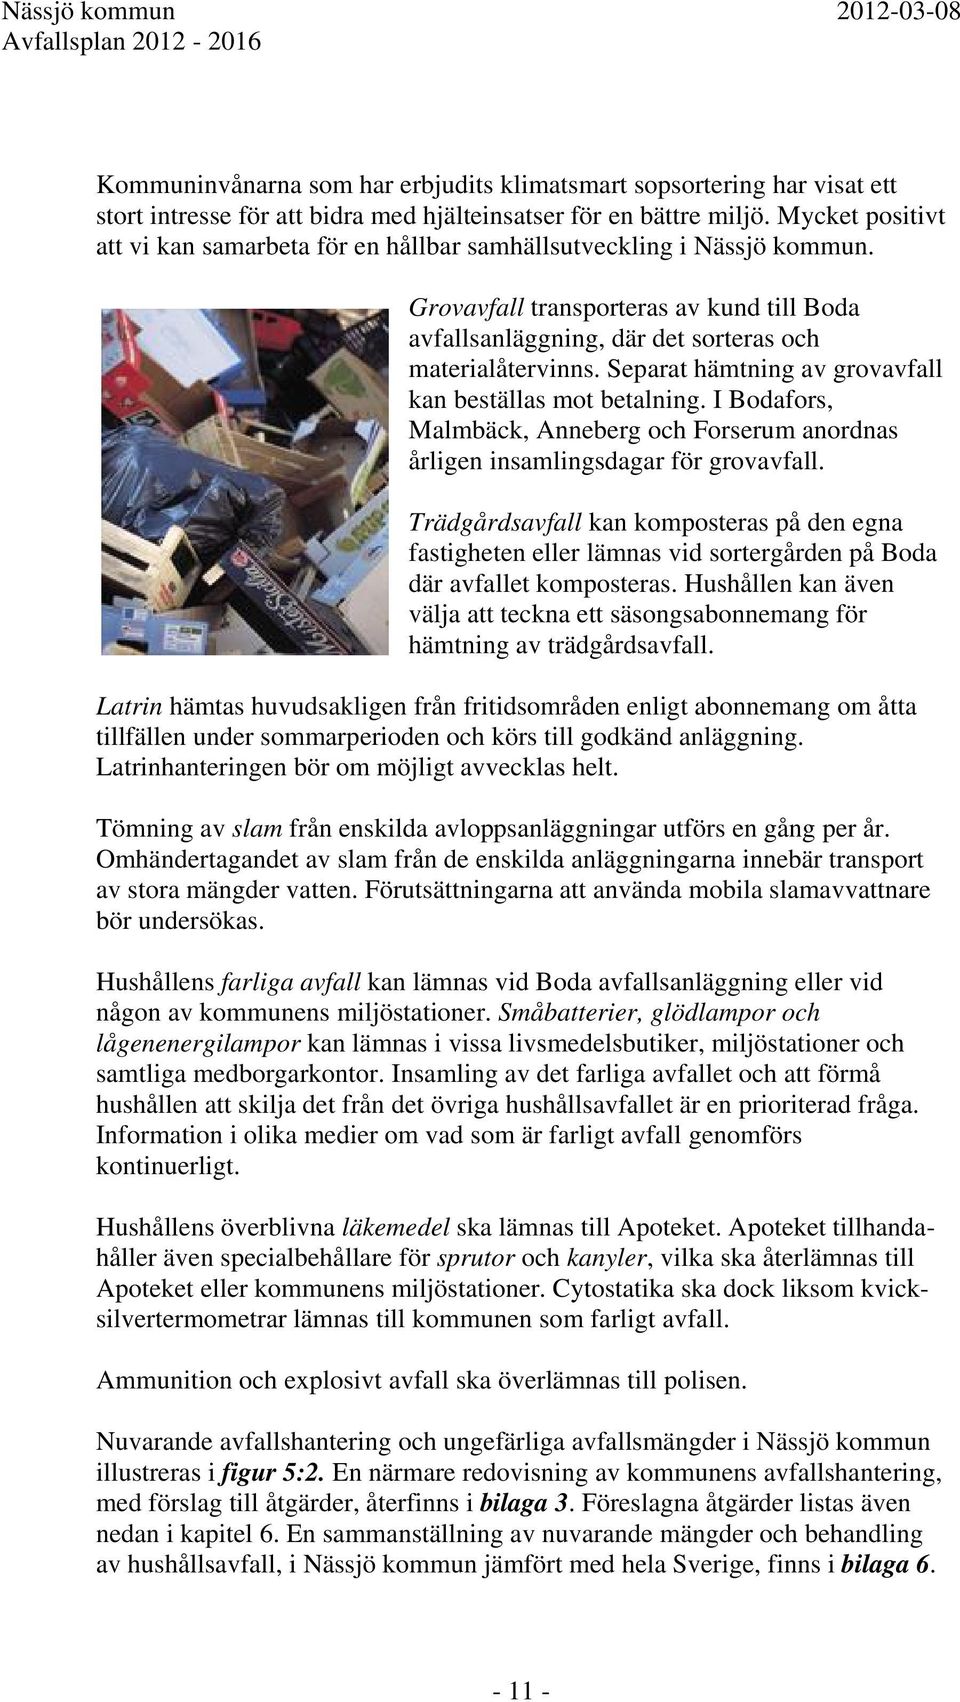 Separat hämtning av grovavfall kan beställas mot betalning. I Bodafors, Malmbäck, Anneberg och Forserum anordnas årligen insamlingsdagar för grovavfall.